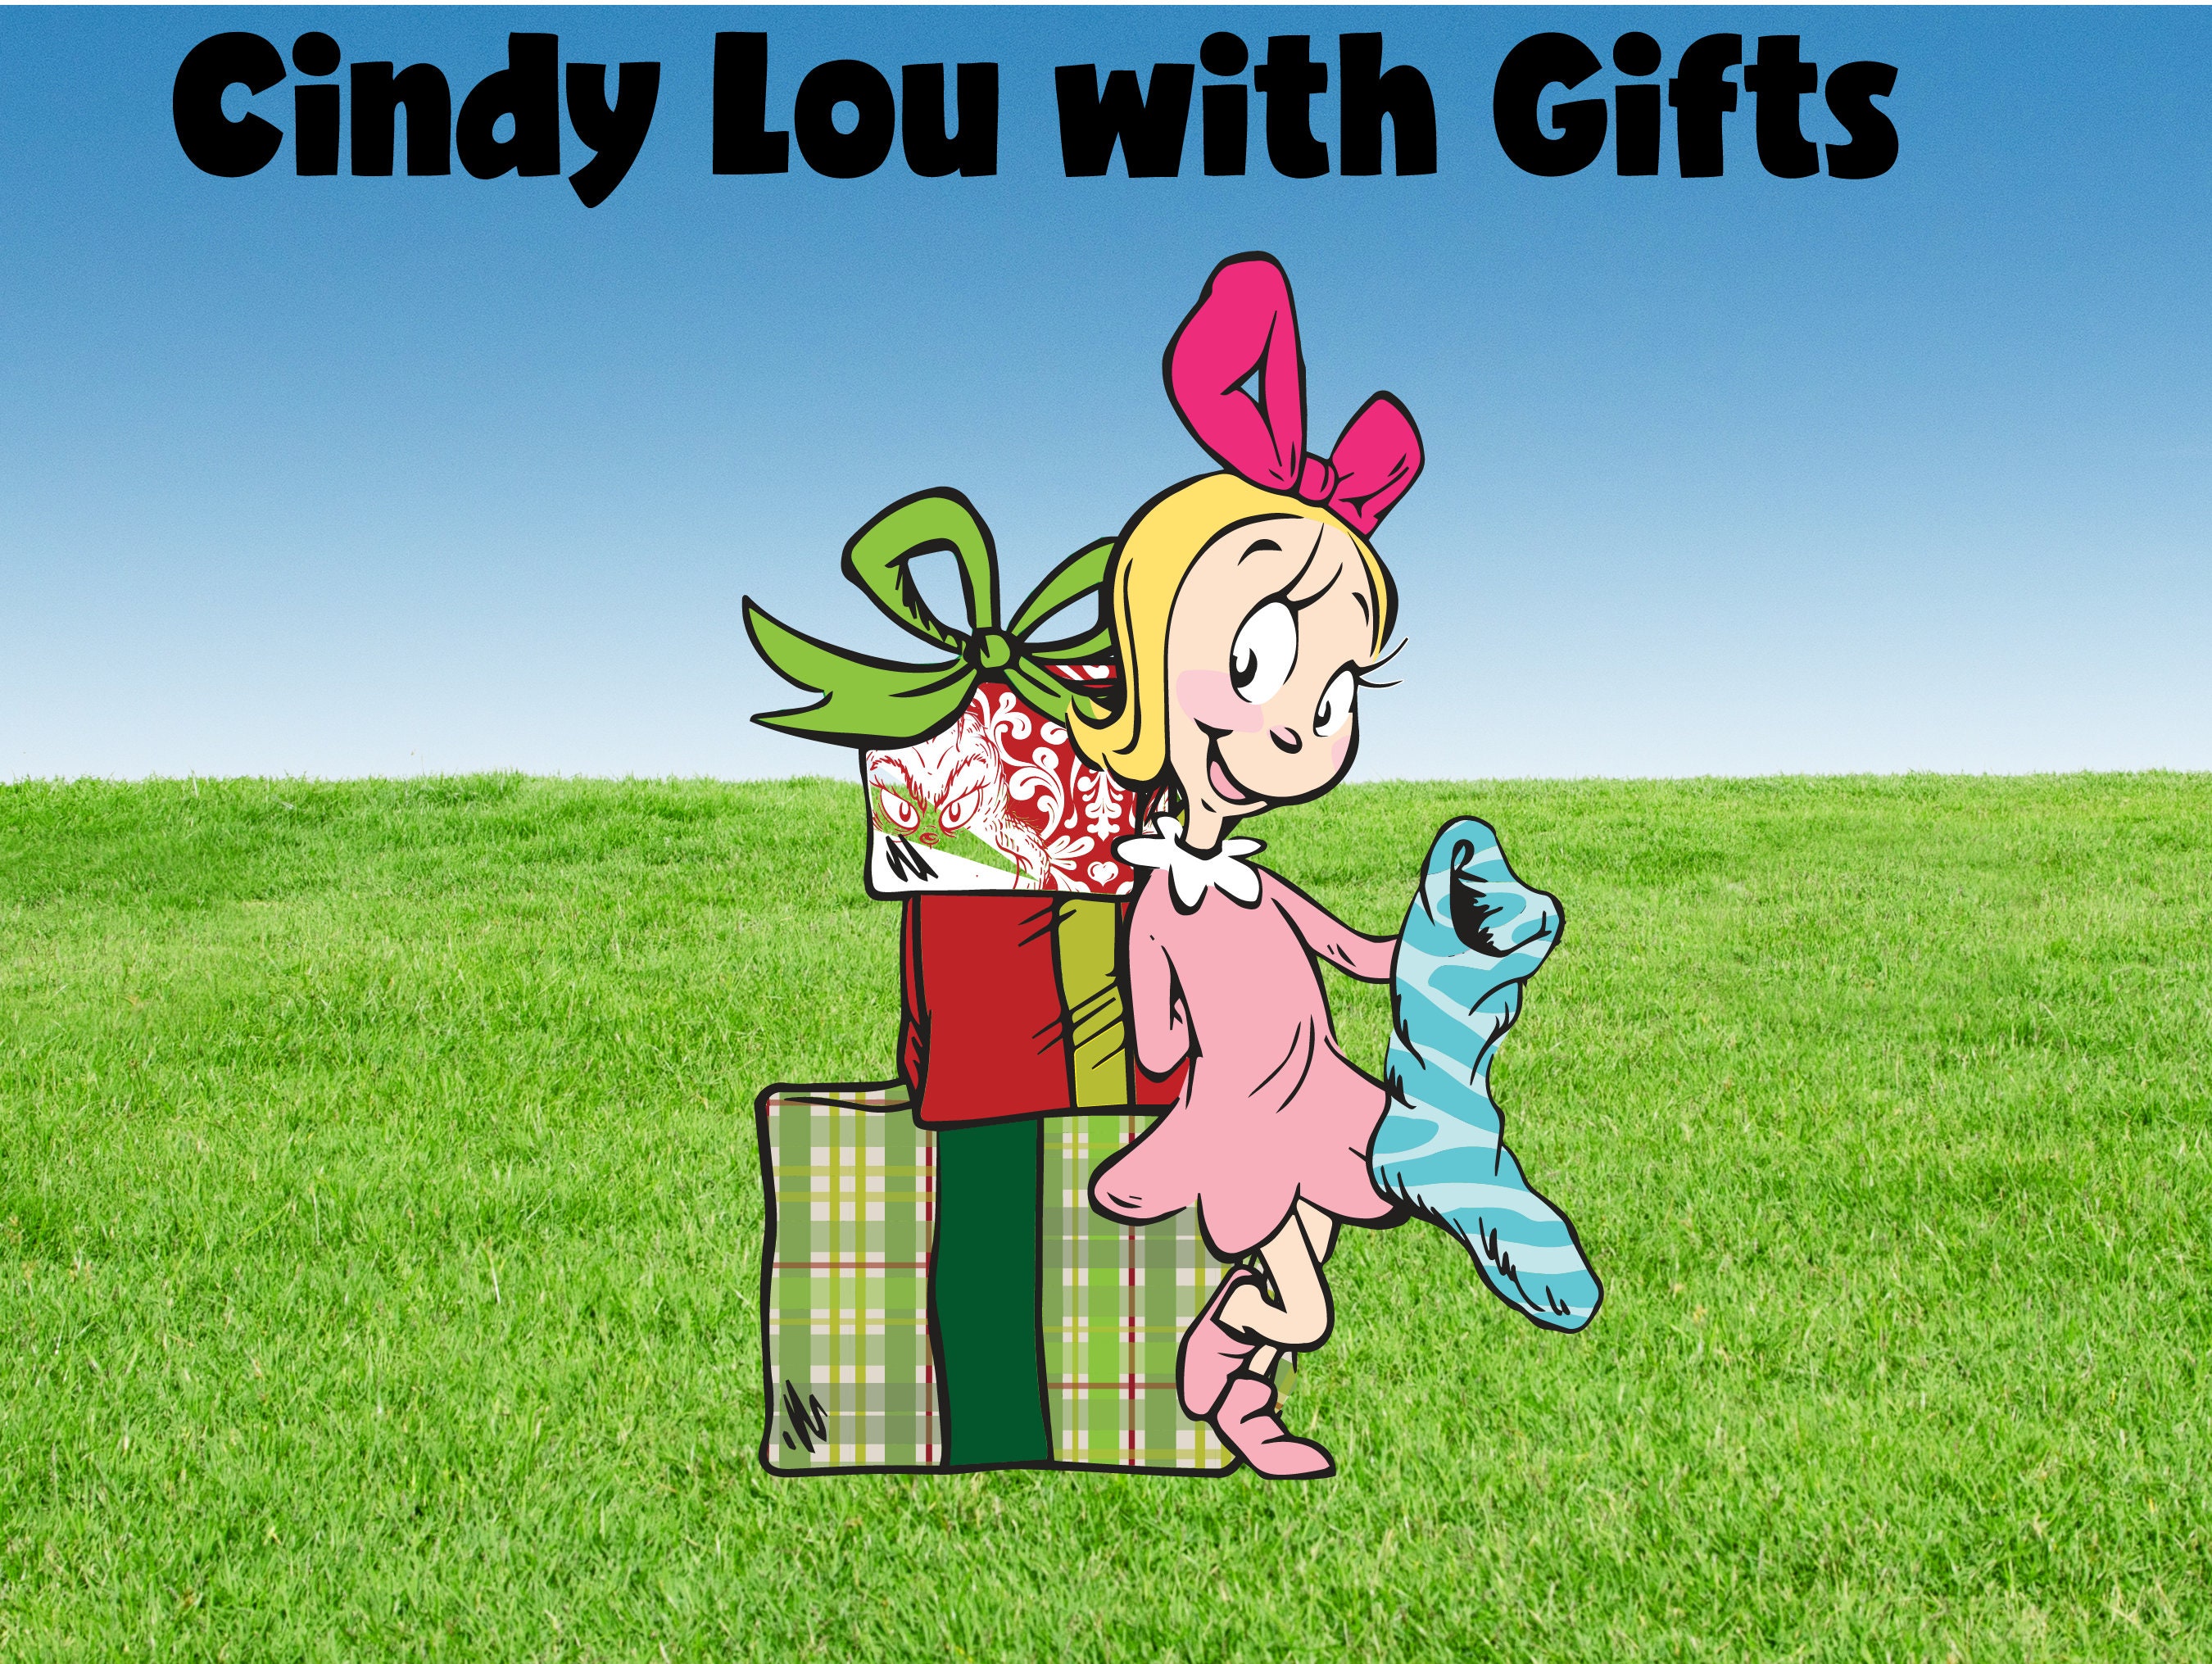 Cindy Lou Who con regalos y un Grinch oculto Whoville - Etsy España